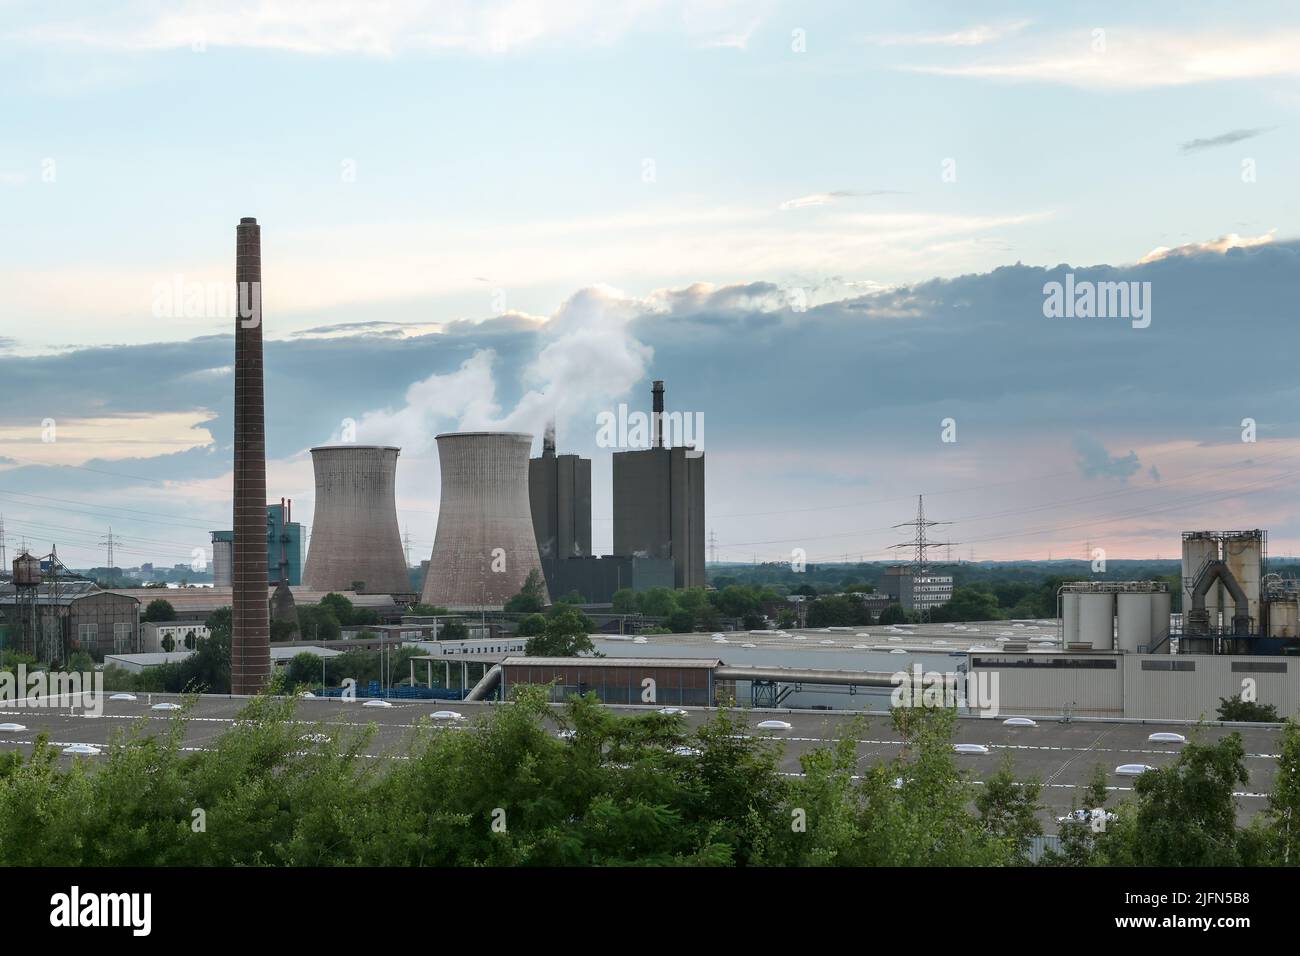 Camino e torri di raffreddamento con inquinamento, industria siderurgica a Duisburg con altiforni, forno a coke e centrale elettrica, paesaggio industriale Foto Stock